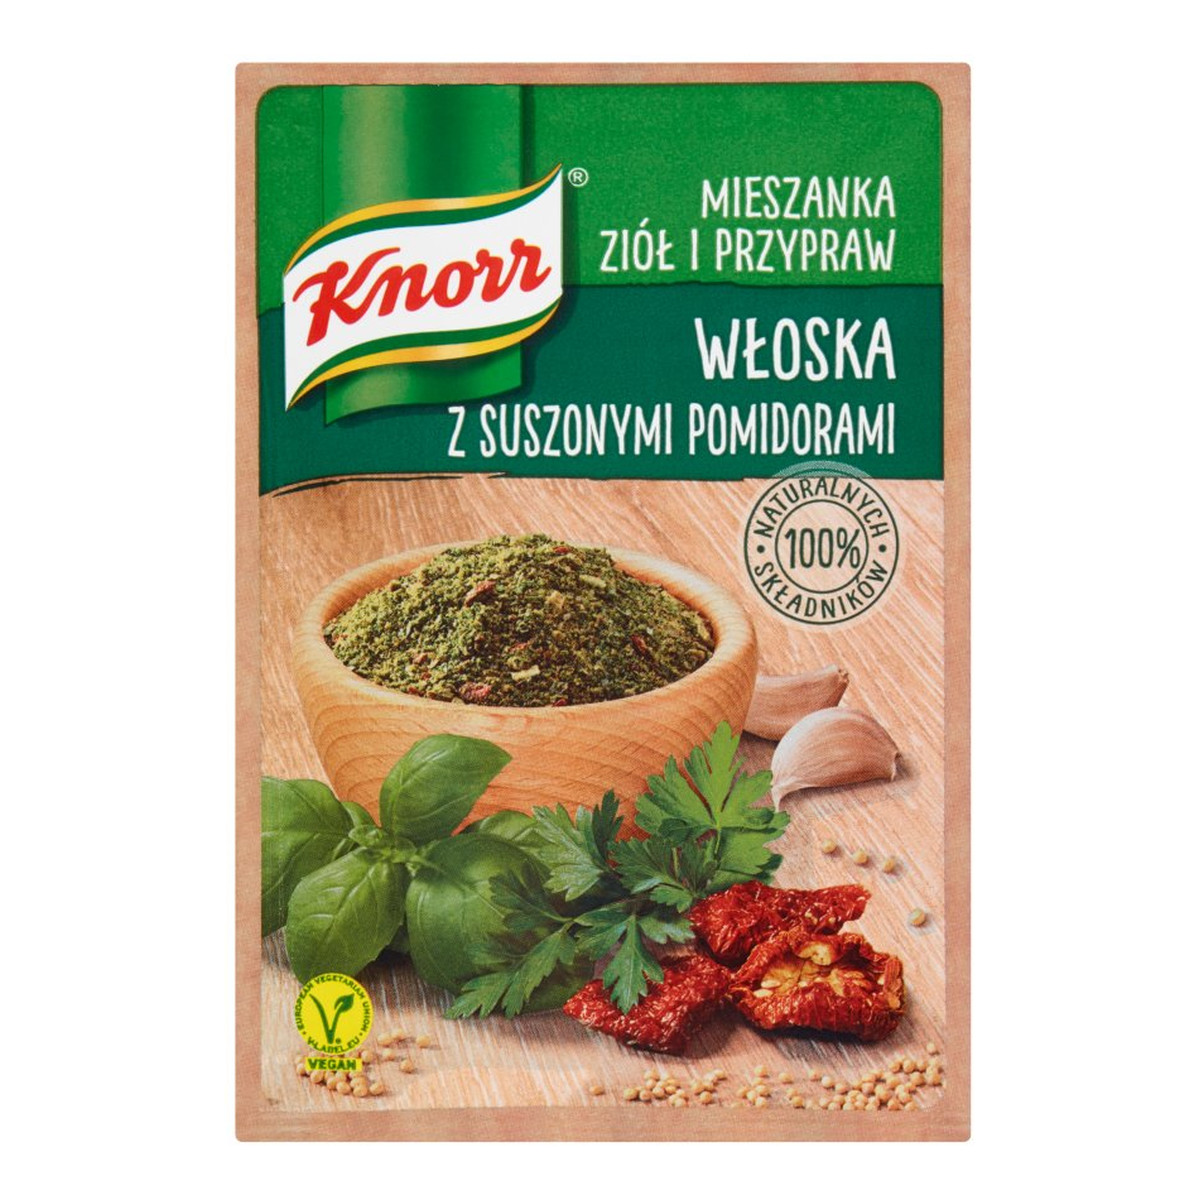 Knorr Mieszanka ziół i przypraw włoska z suszonymi pomidorami 13g